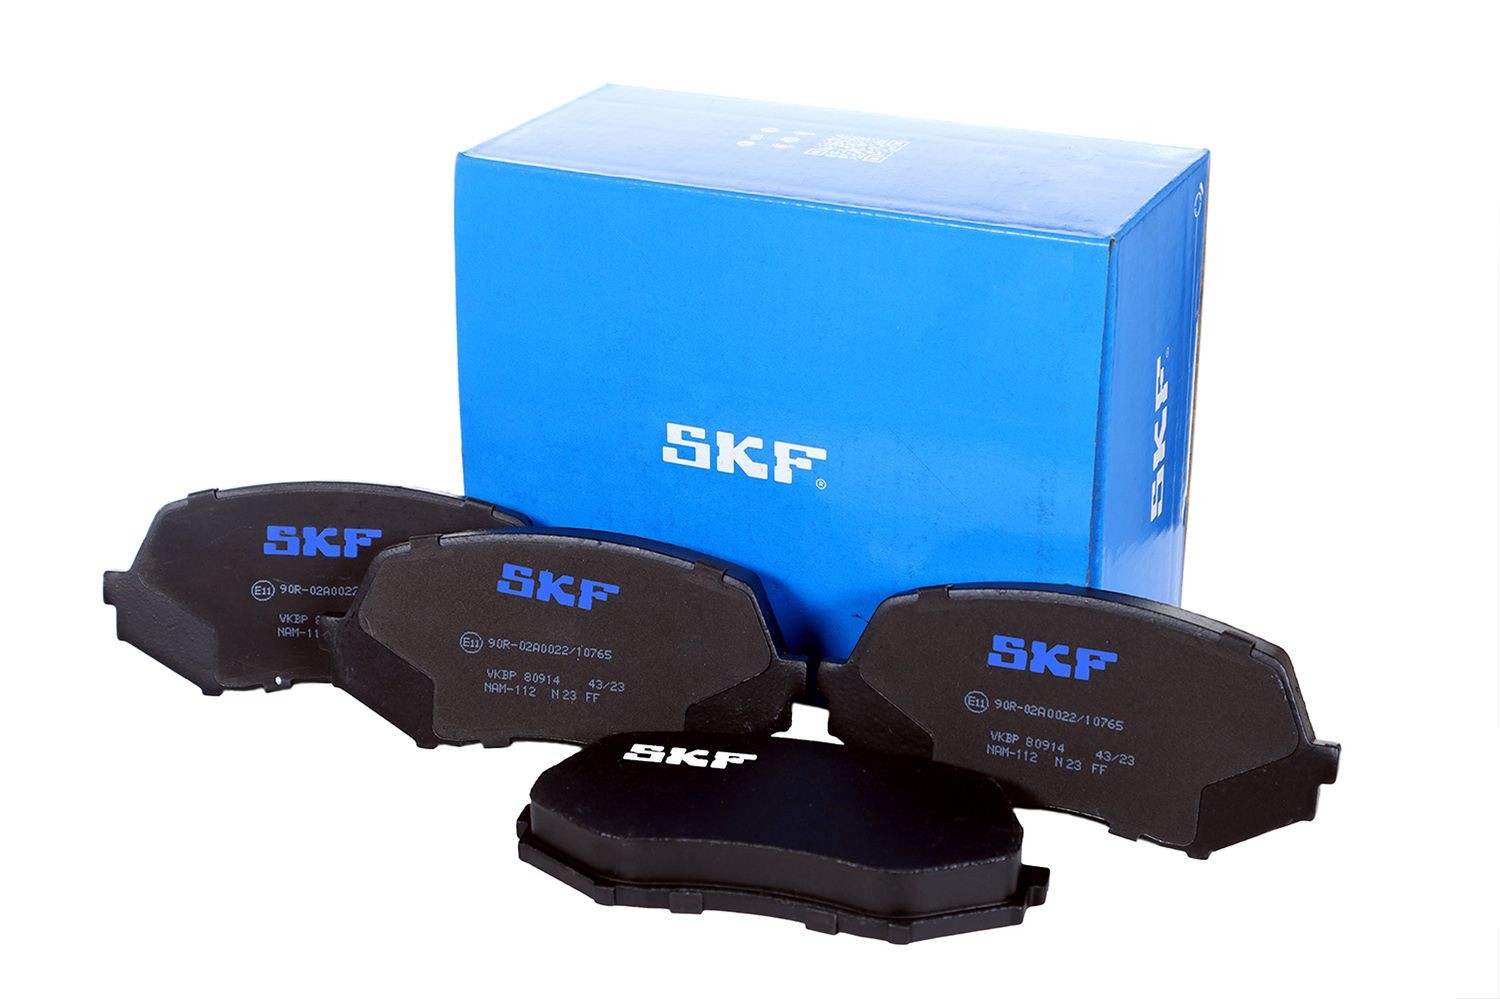 VKBP 80914 SKF Bremsbeläge für RENAULT TRUCKS online bestellen